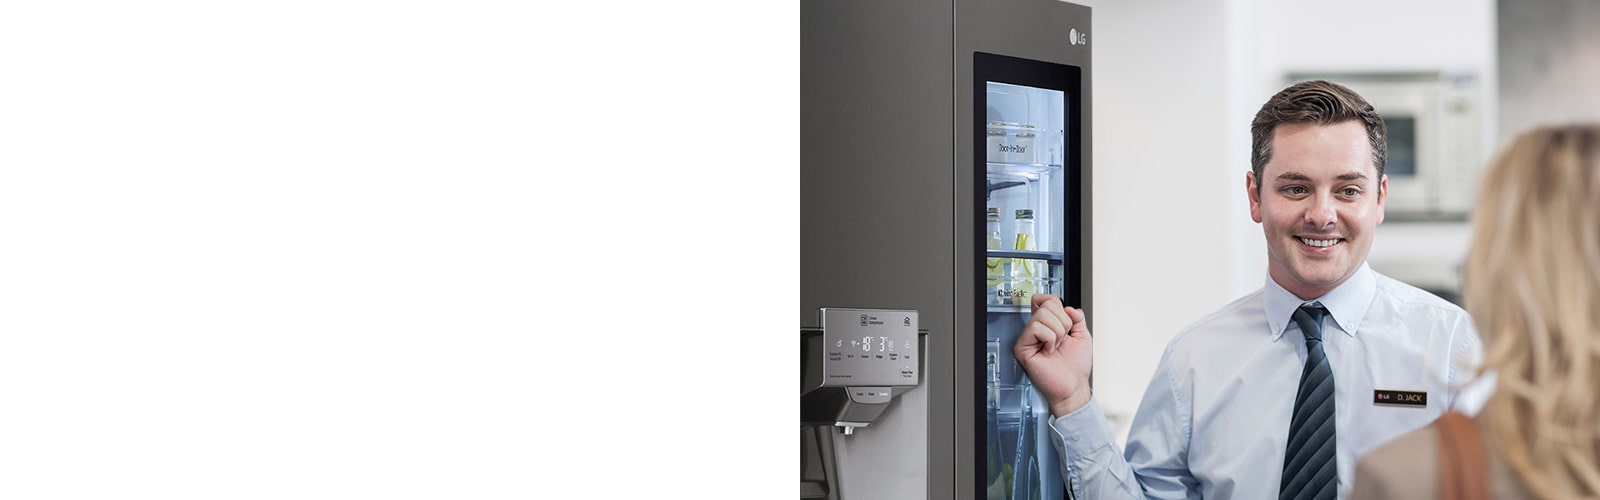 Мужчина в рубашке и галстуке улыбается и разговаривает с женщиной, стоящей спиной к камере, указывая на холодильник позади себя.